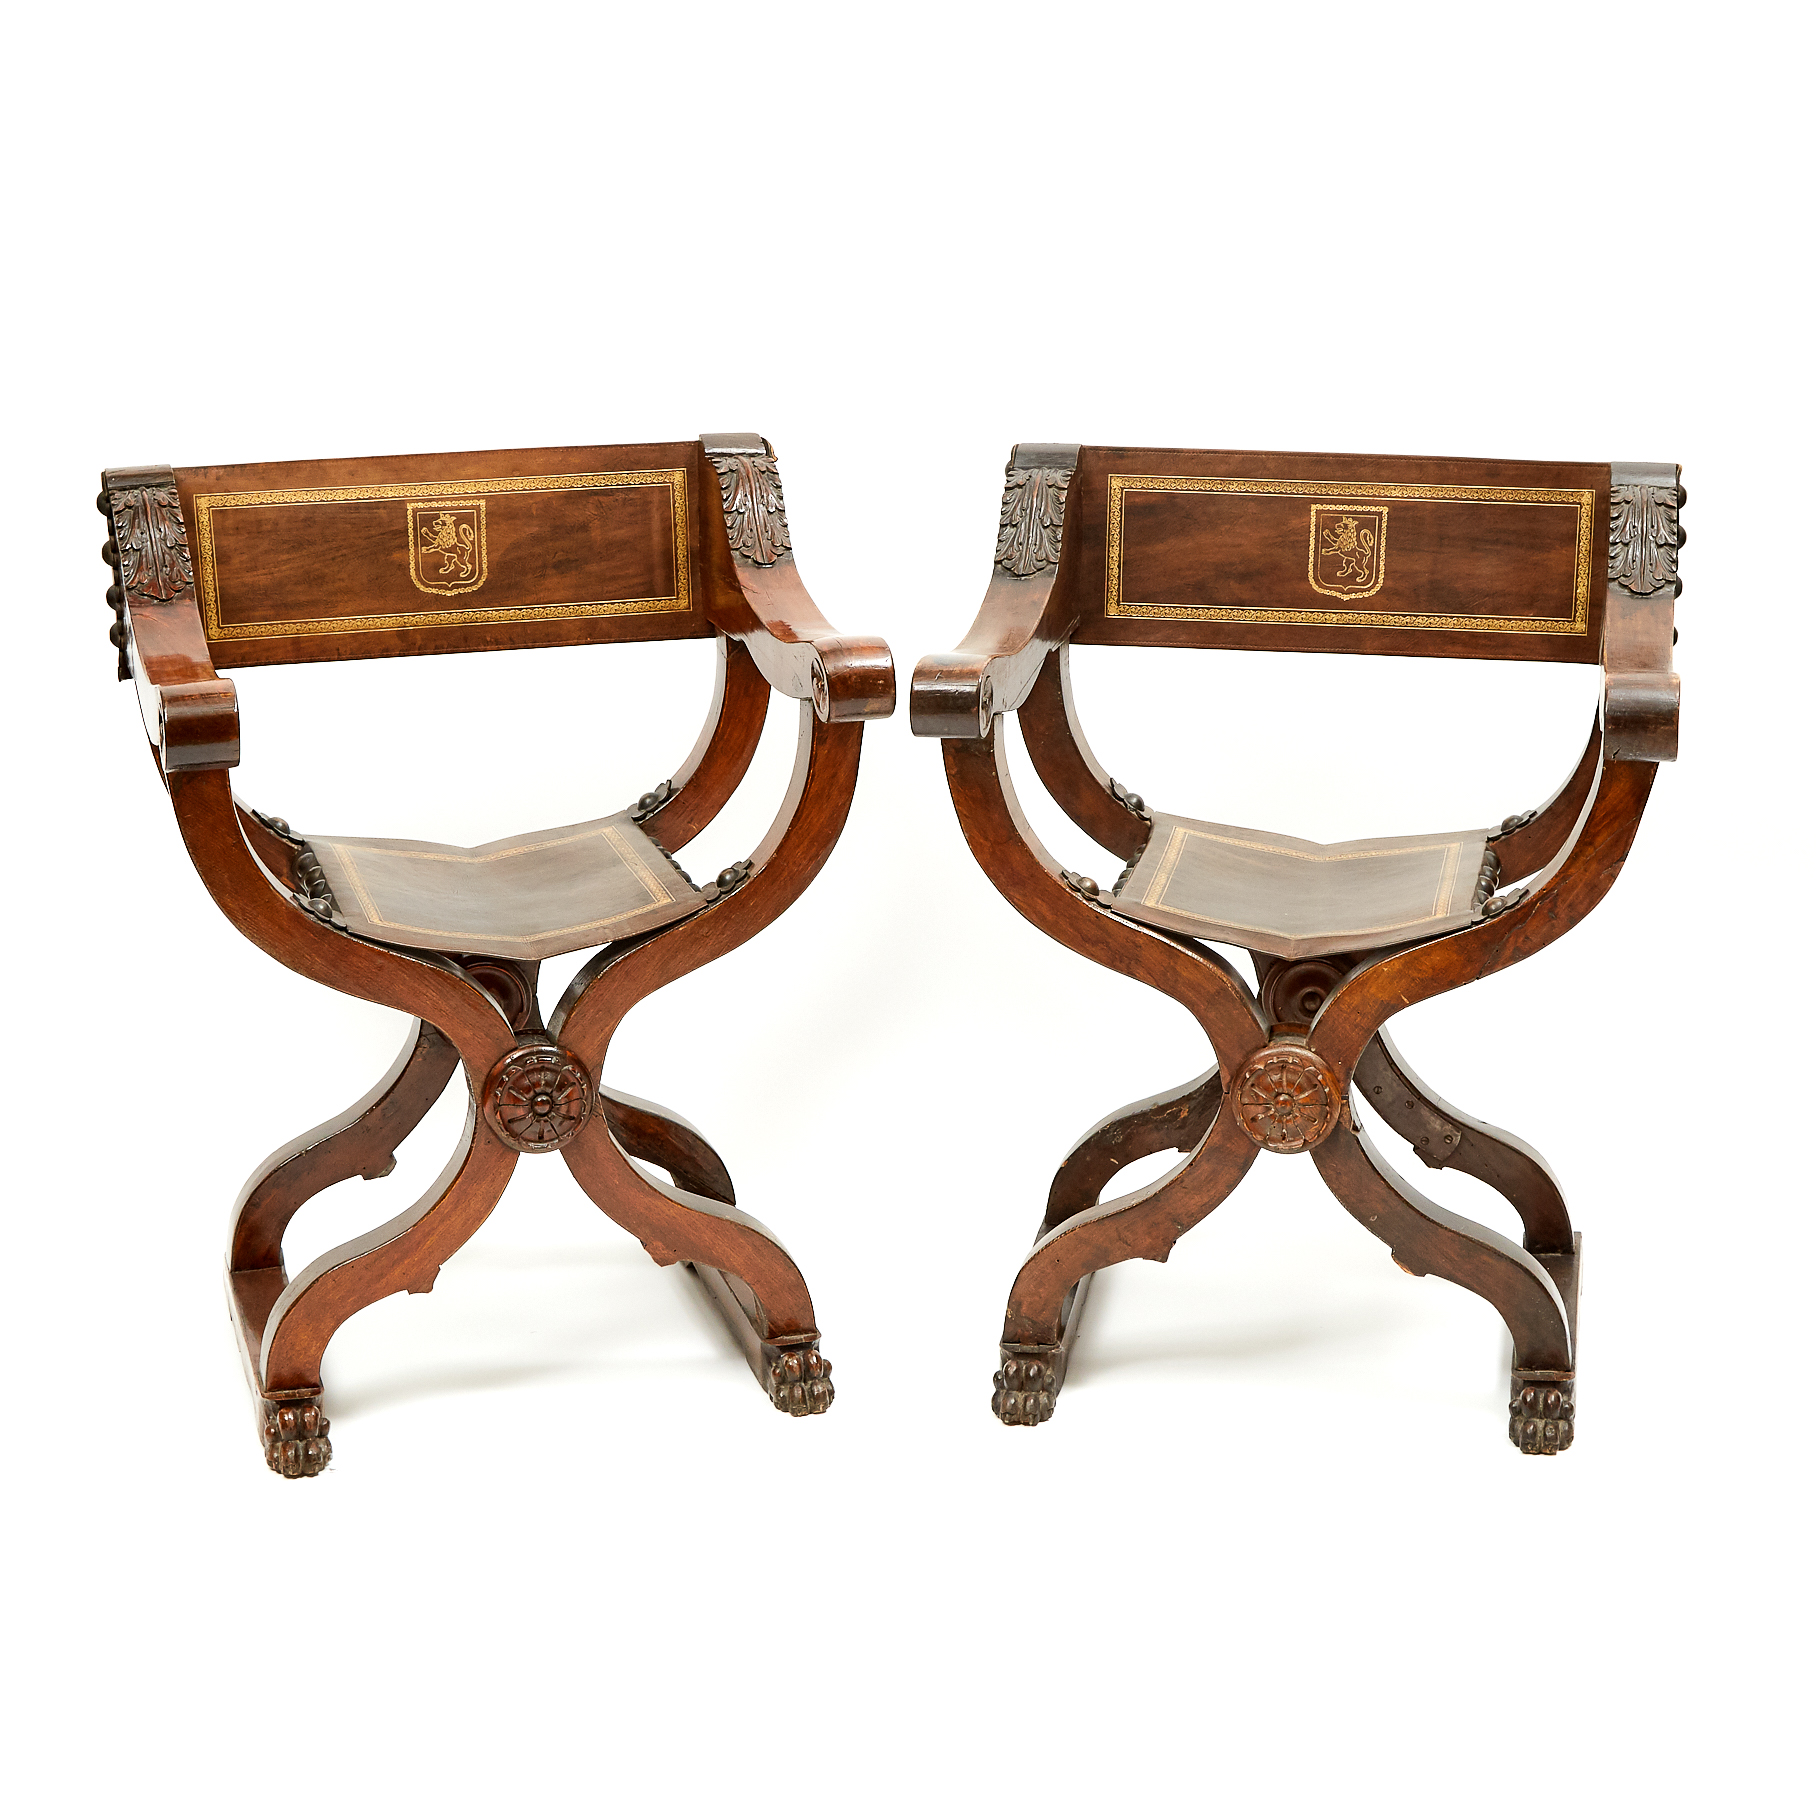 Pair of Italian Renaissance Revival Savonarola  Arm Chairs, 19th century